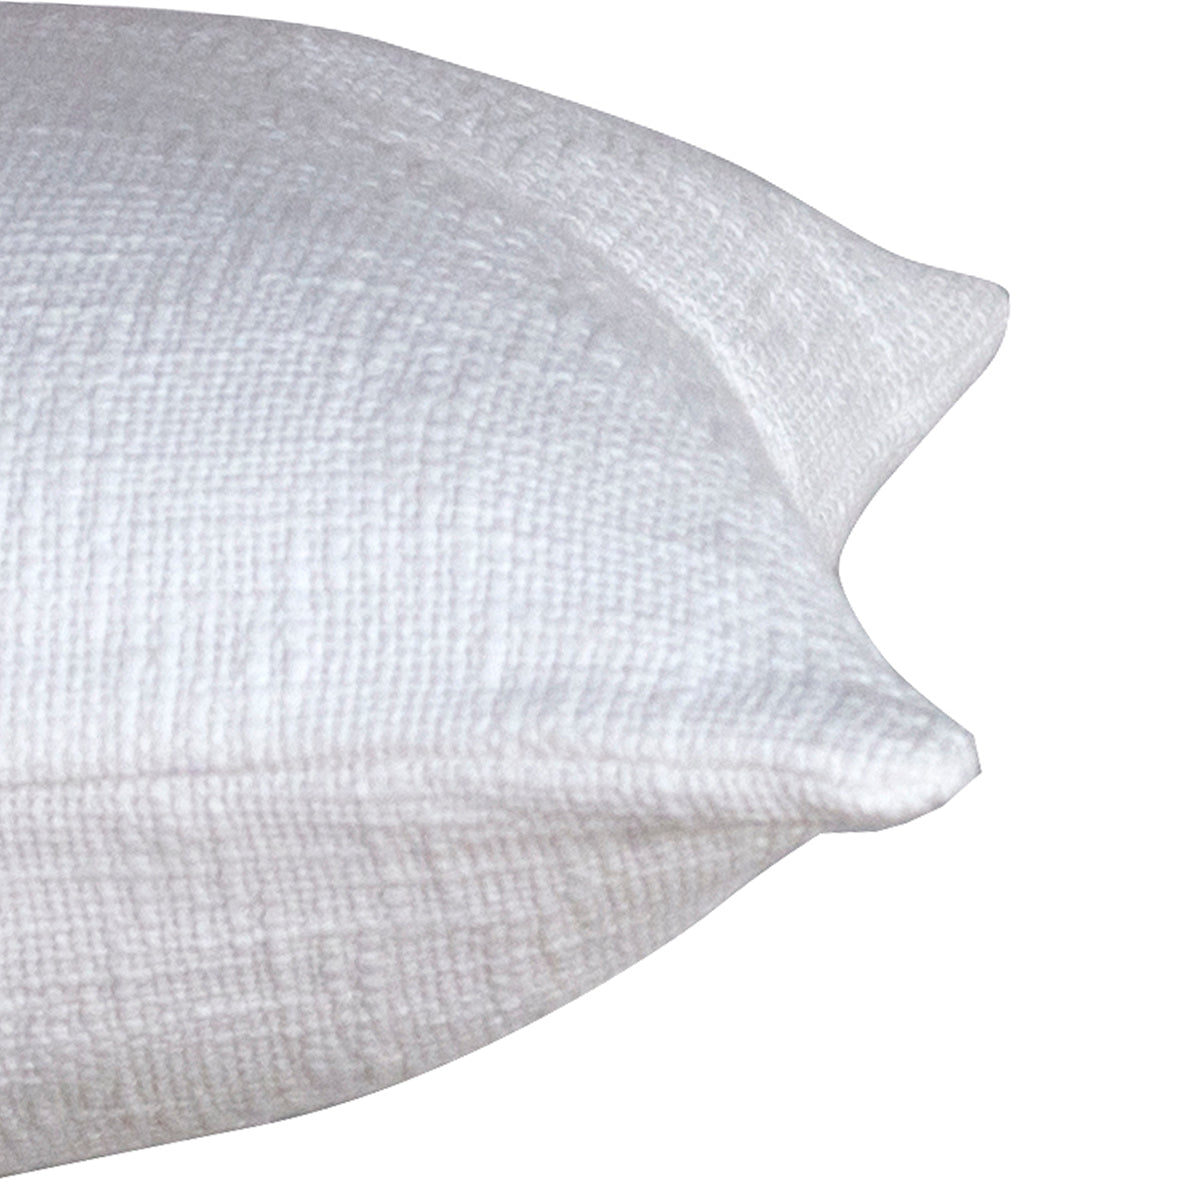 Rurban Divine Marcella Solid 100% Cotton White Cushion Cover